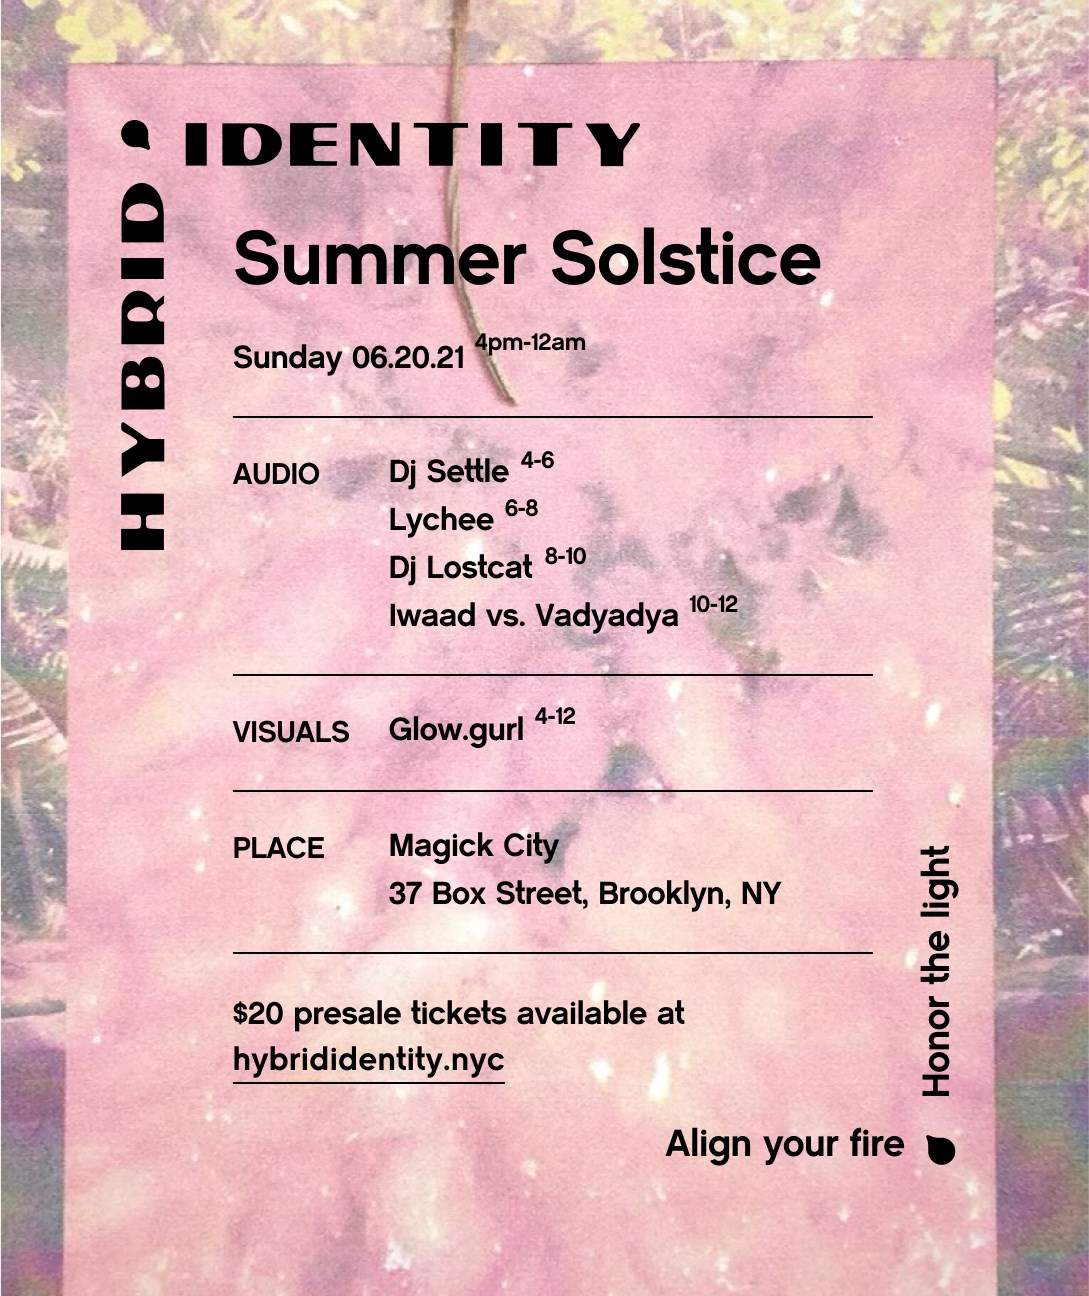 Hybrid Identity: Summer Solstice Ed - Página frontal